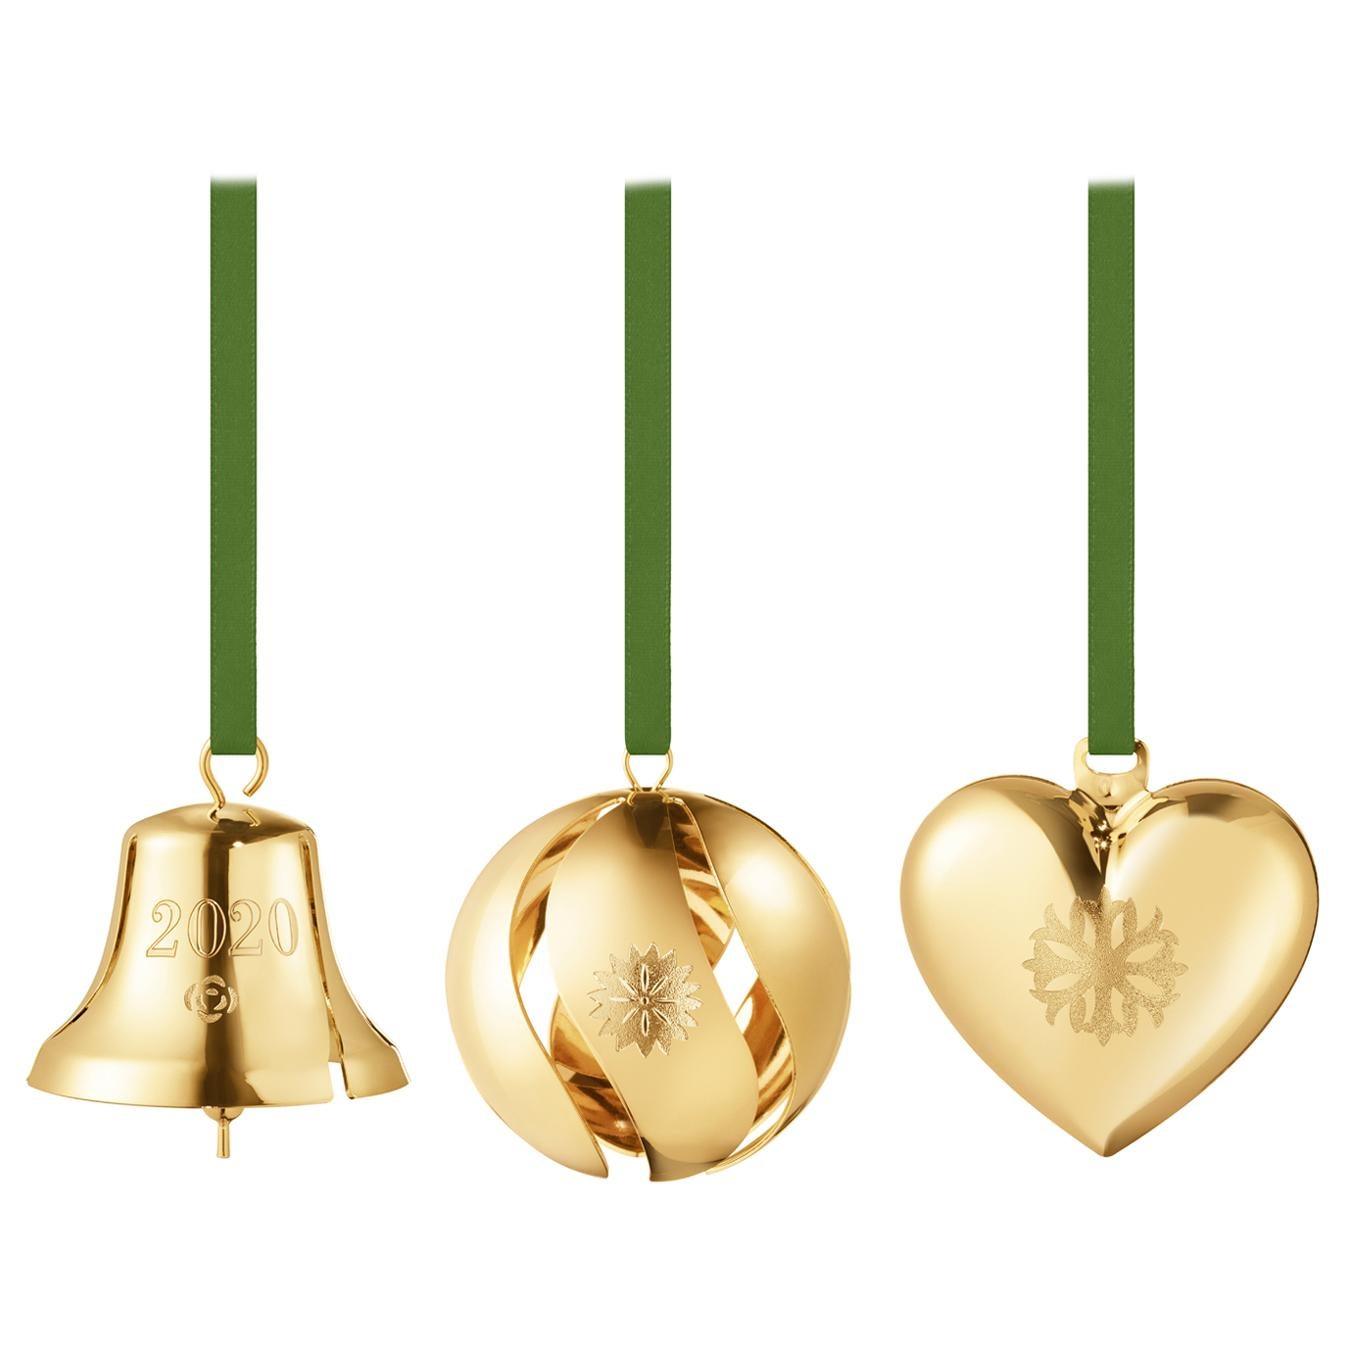 Cc 2020 3 Pcs Gift Set Bell, Ball, Heart Gold